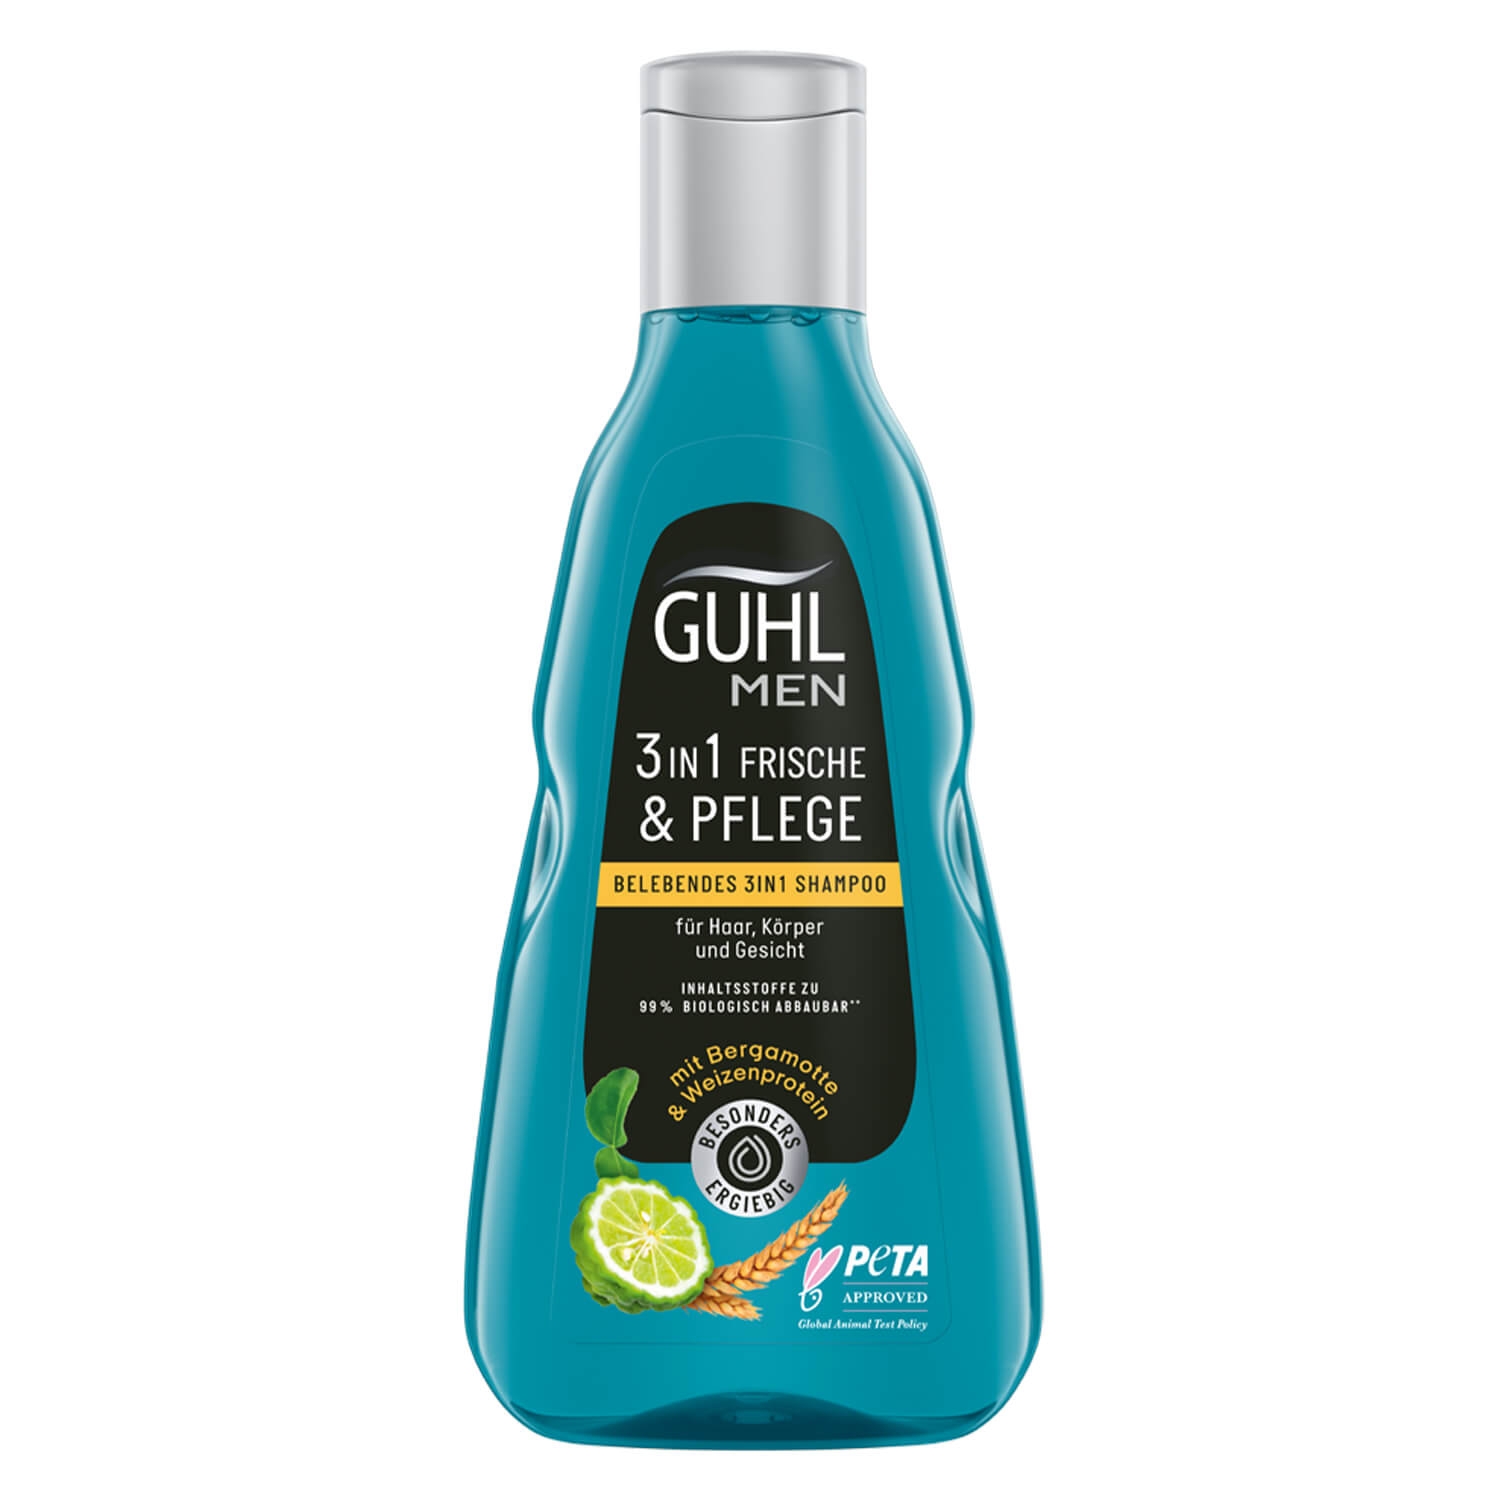 Produktbild von GUHL - MEN FRISCHE & PFLEGE Belebendes 3in1 Shampoo